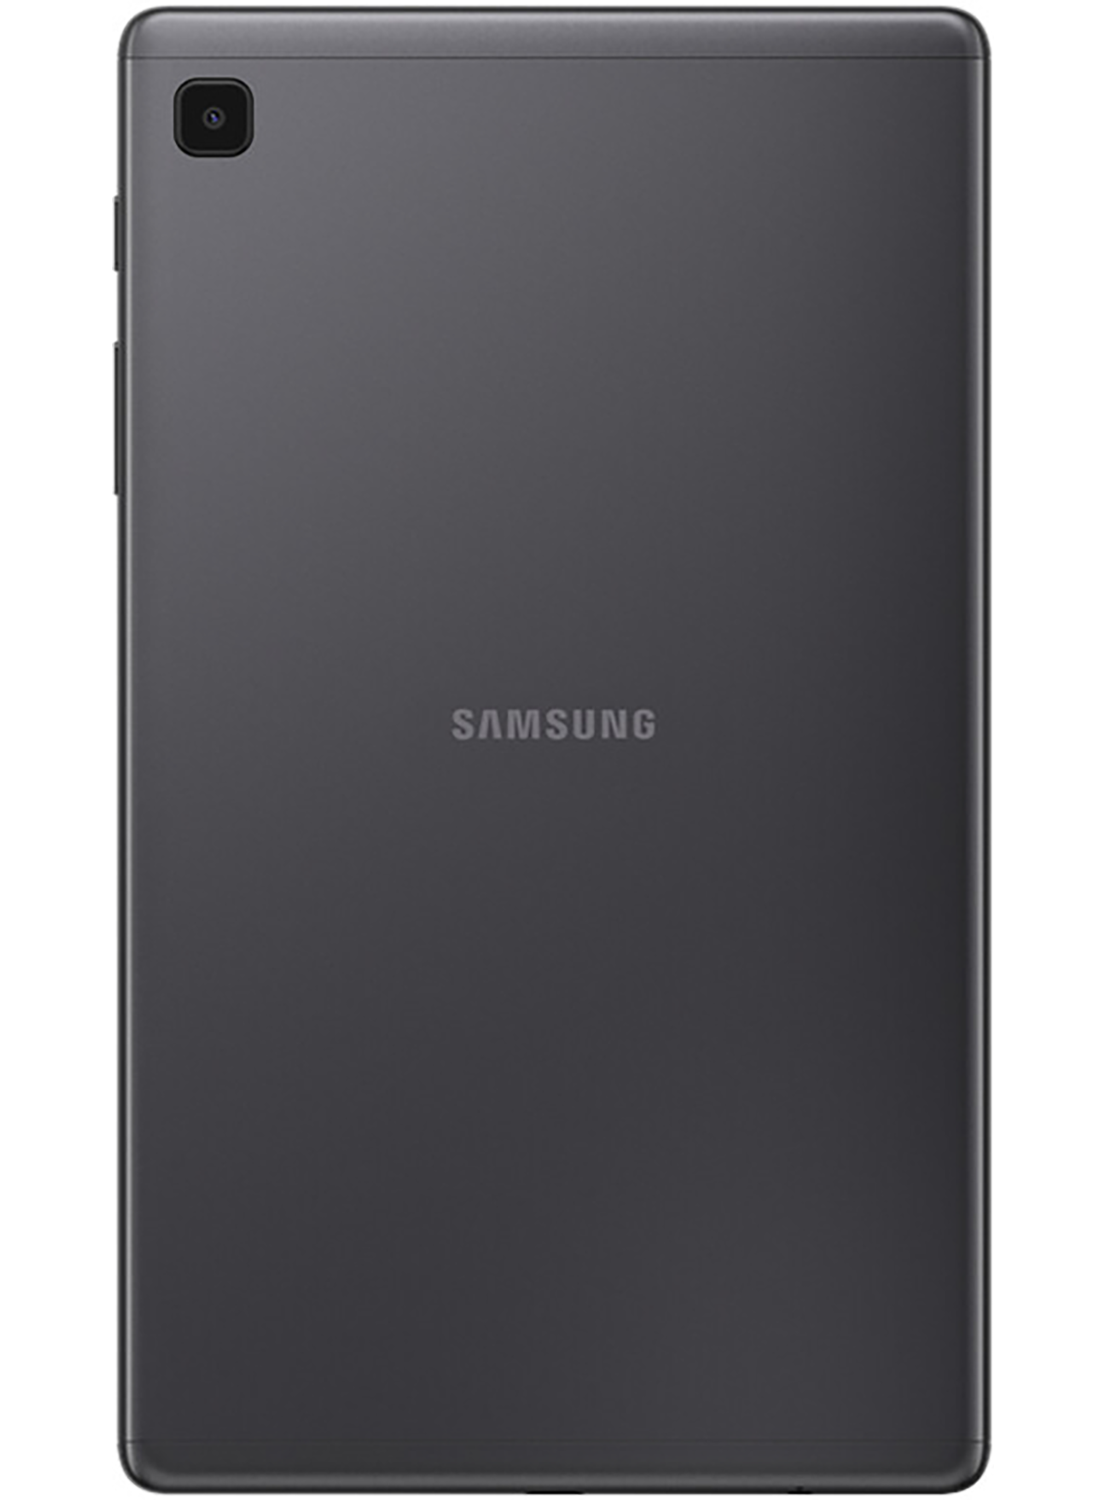 Samsung Galaxy Tab A7 Lite 32GB